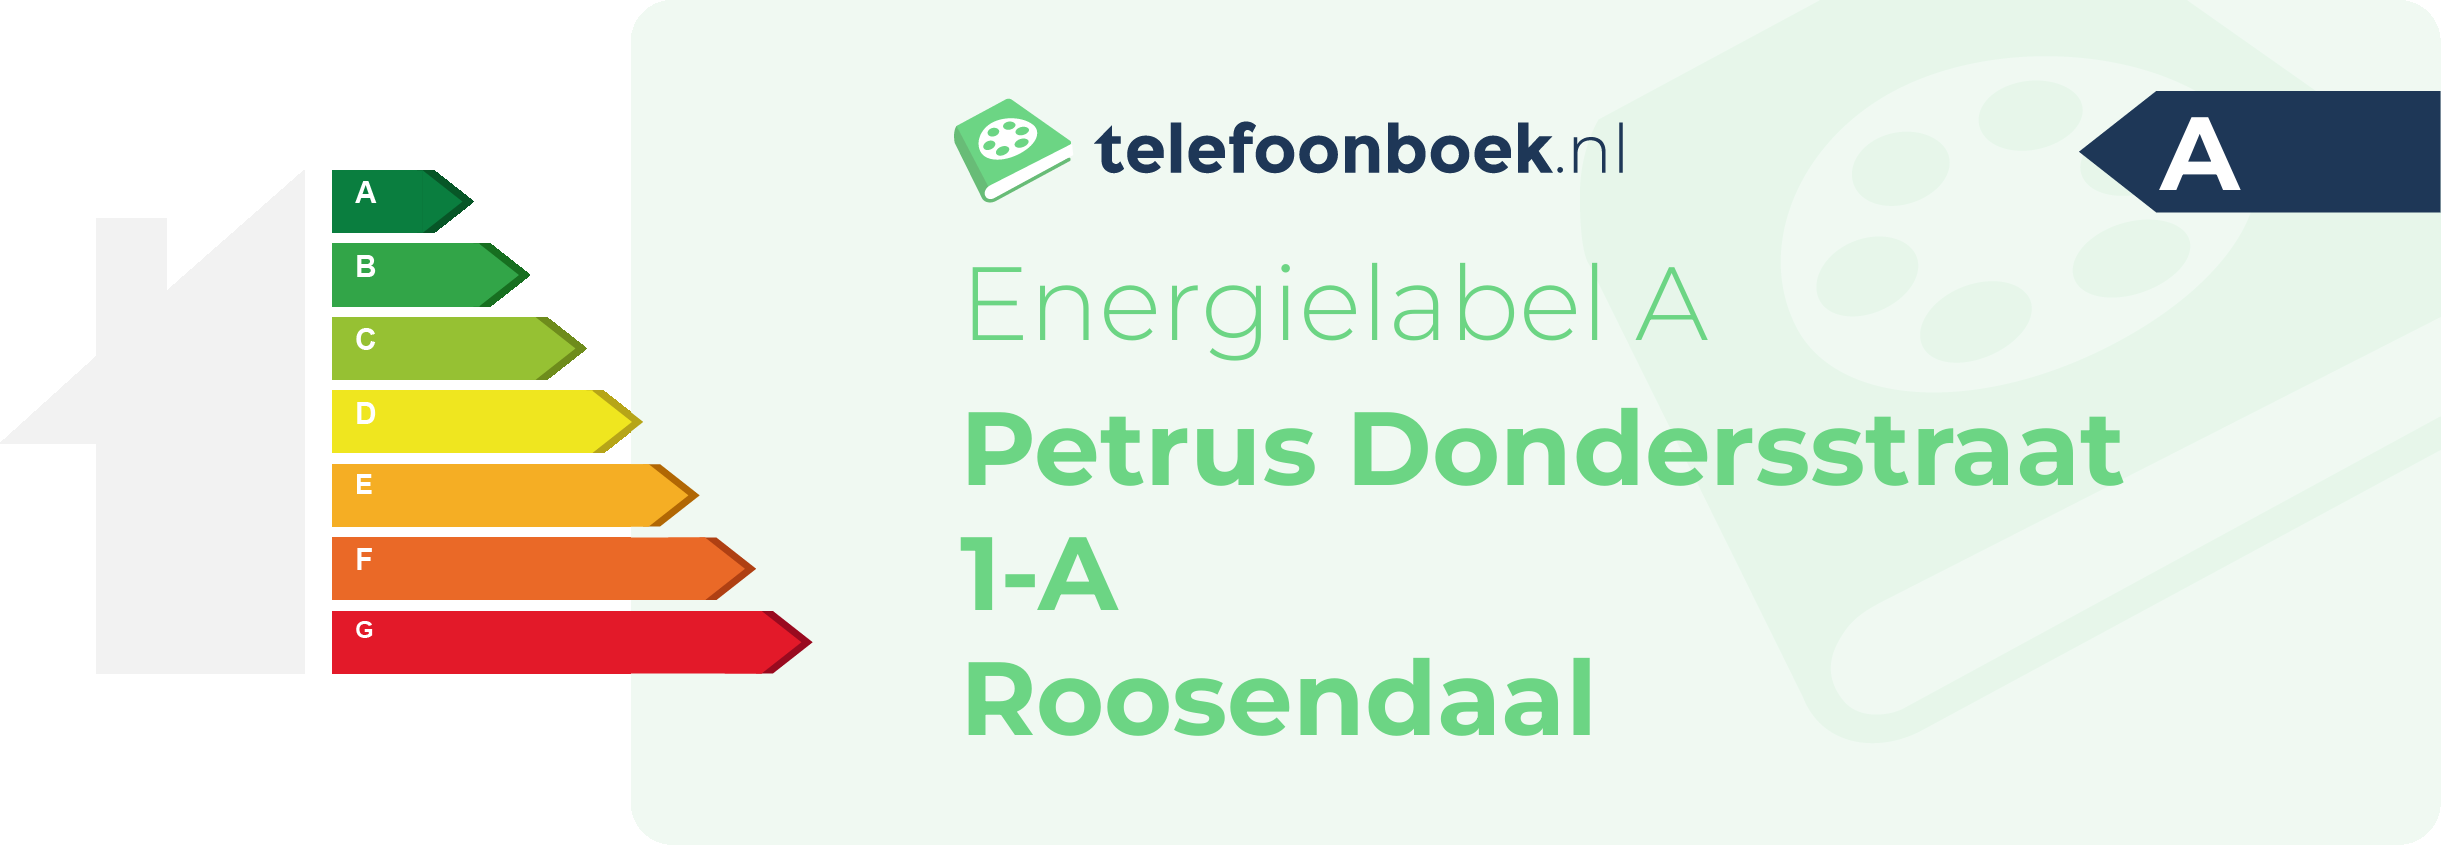 Energielabel Petrus Dondersstraat 1-A Roosendaal